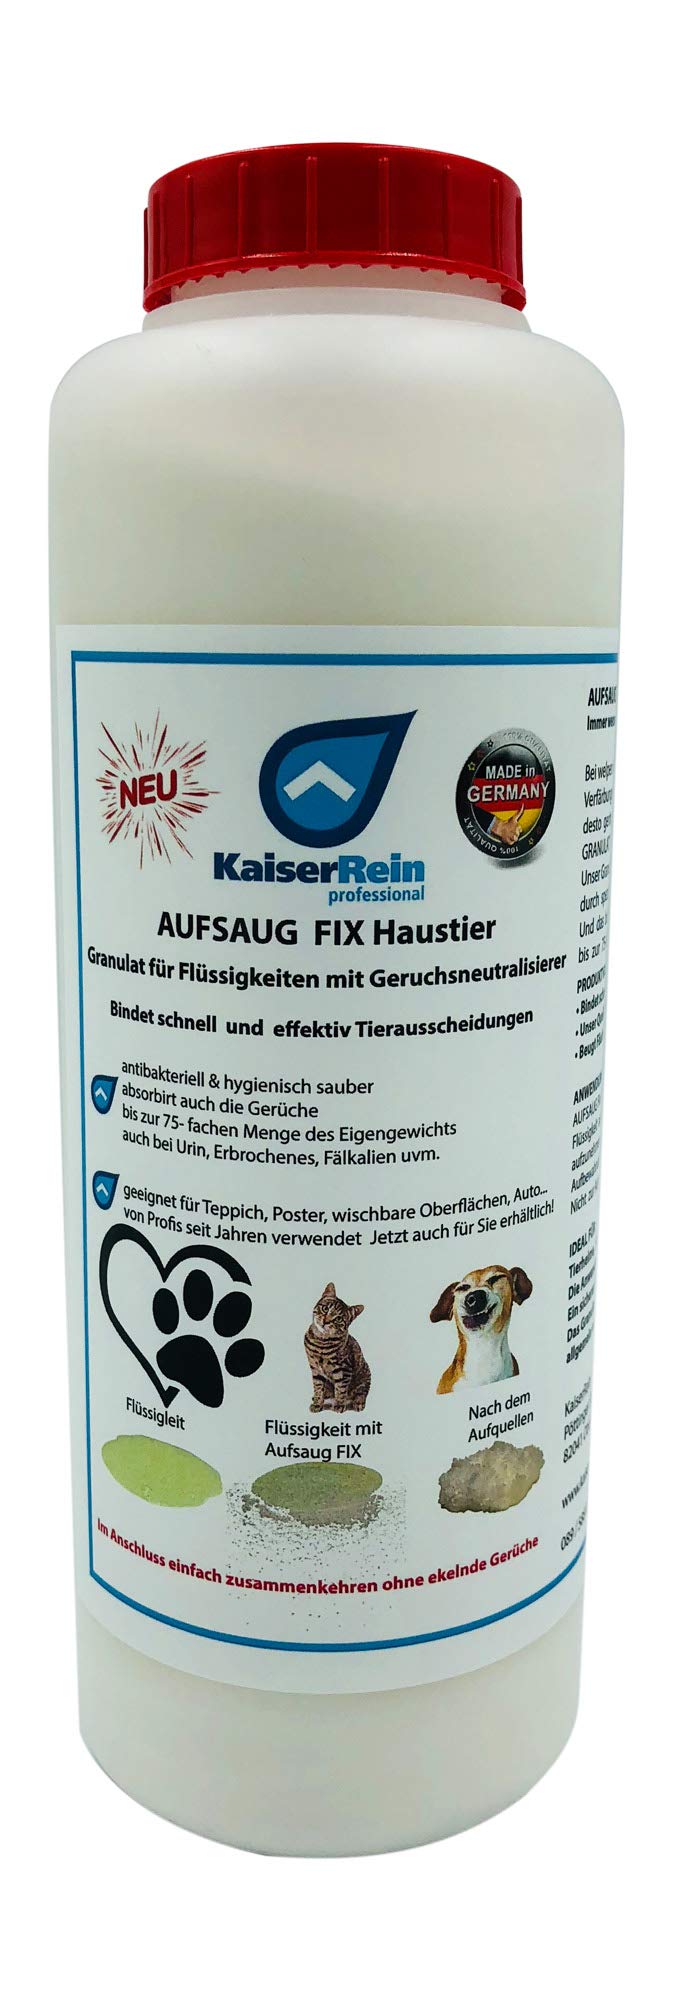 KaiserRein AUFSAUG FIX Granulat Haustier 1 L zum binden von Flüssigkeiten mit Geruchsneutralisierer bei Hundeurin, Katzenurin, Tierurin, Durchfall, KOT, Erbrochenem, Tiergeruch Flüssigkeitabsorber